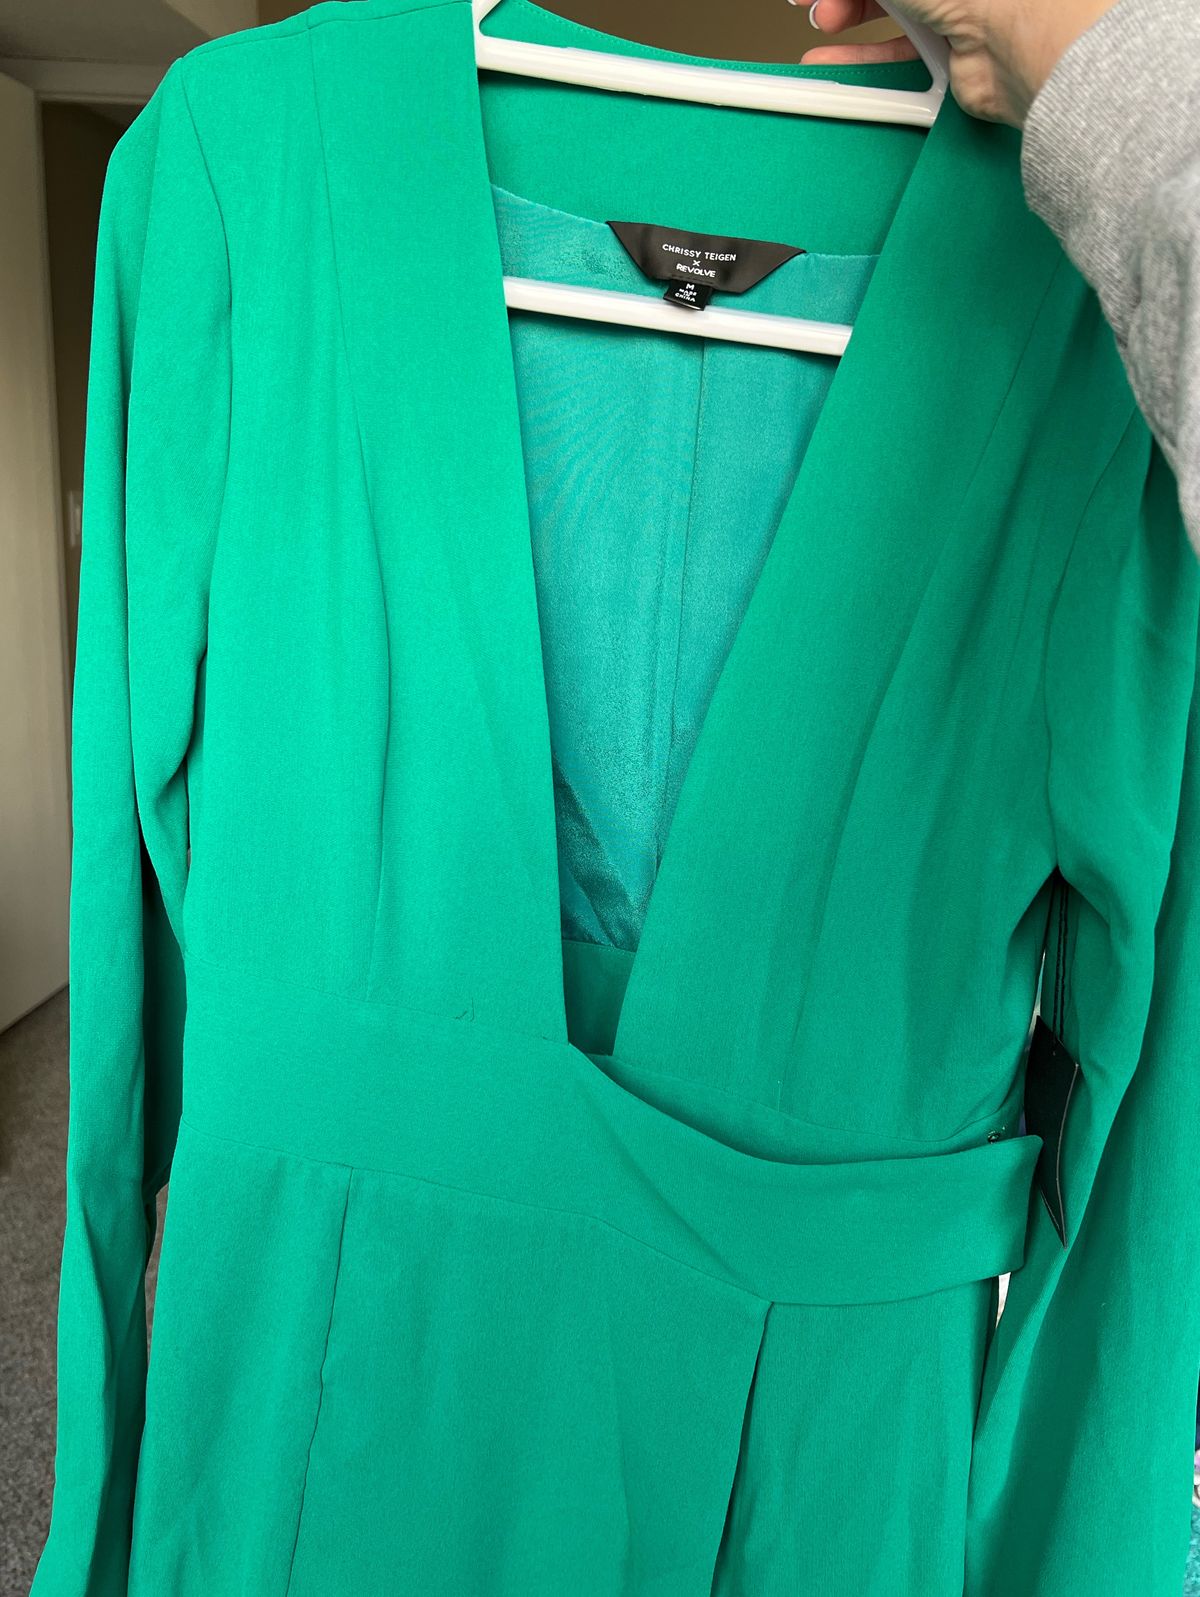 Revolve X Chrissy Teigen Size M Plunge Green Cocktail Dress on Queenly